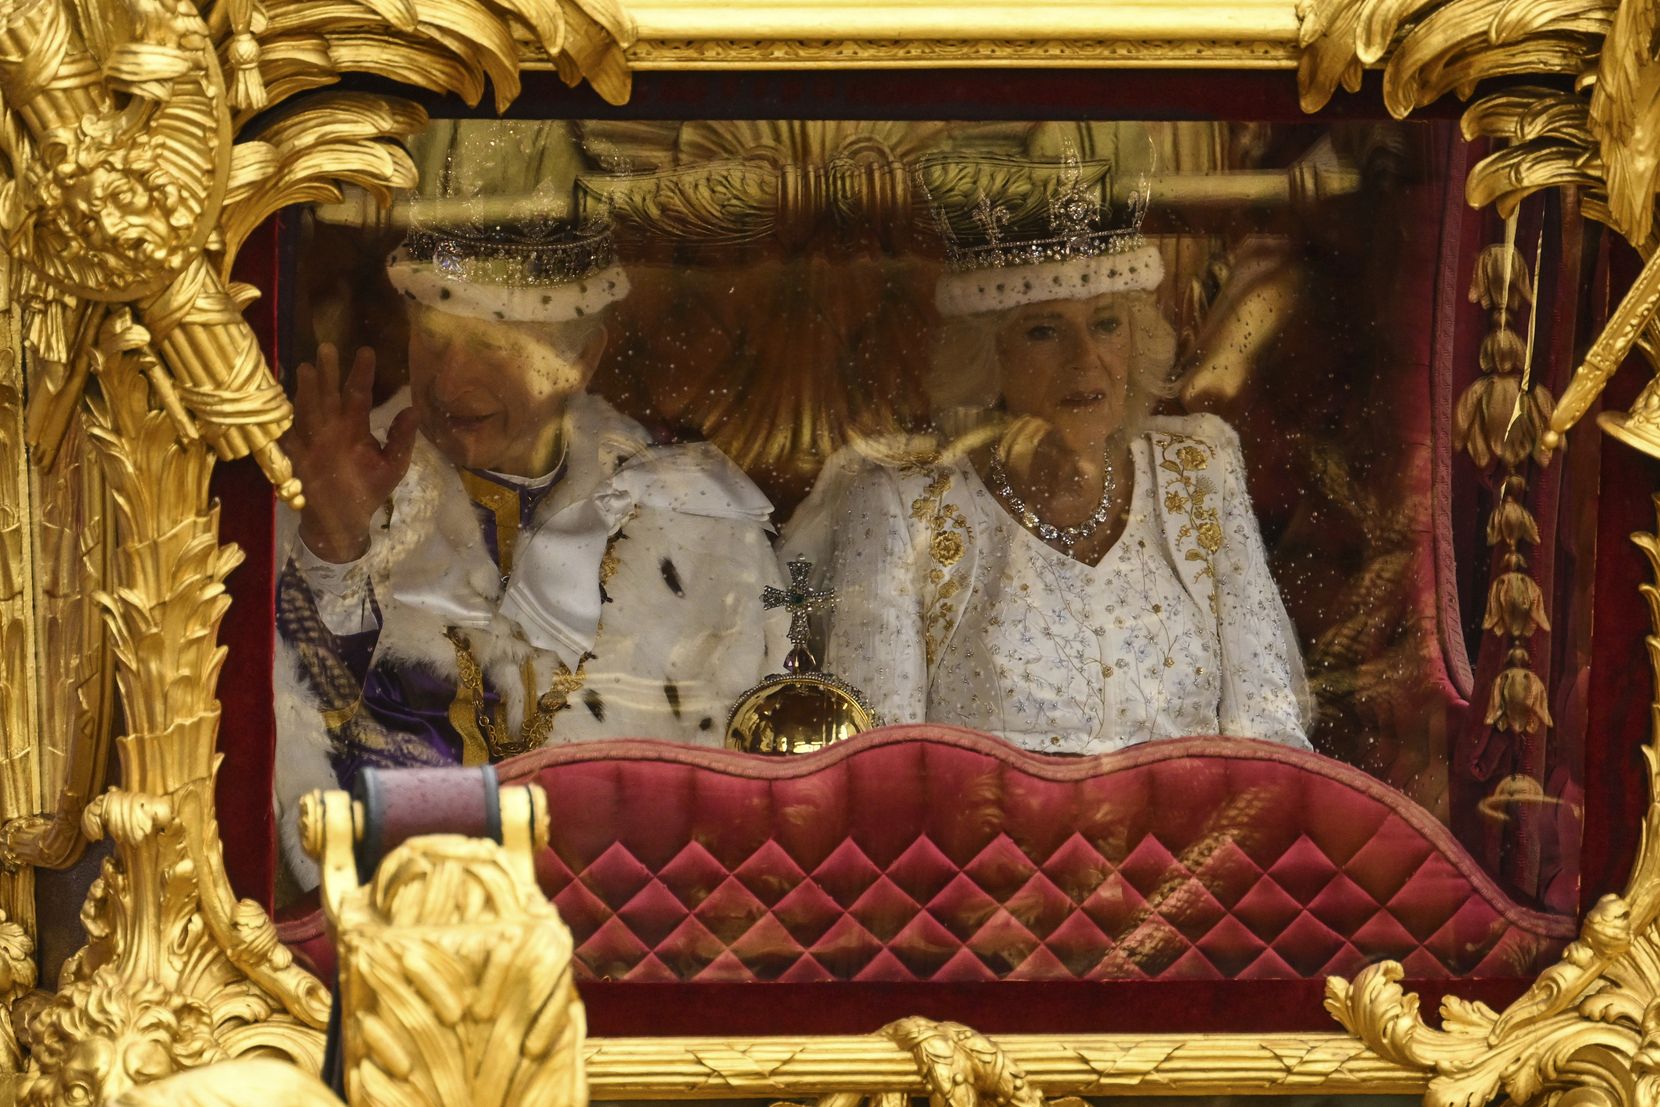 Ein Königspaar voll Prunk und Pracht in einer vergoldeten Kutsche.